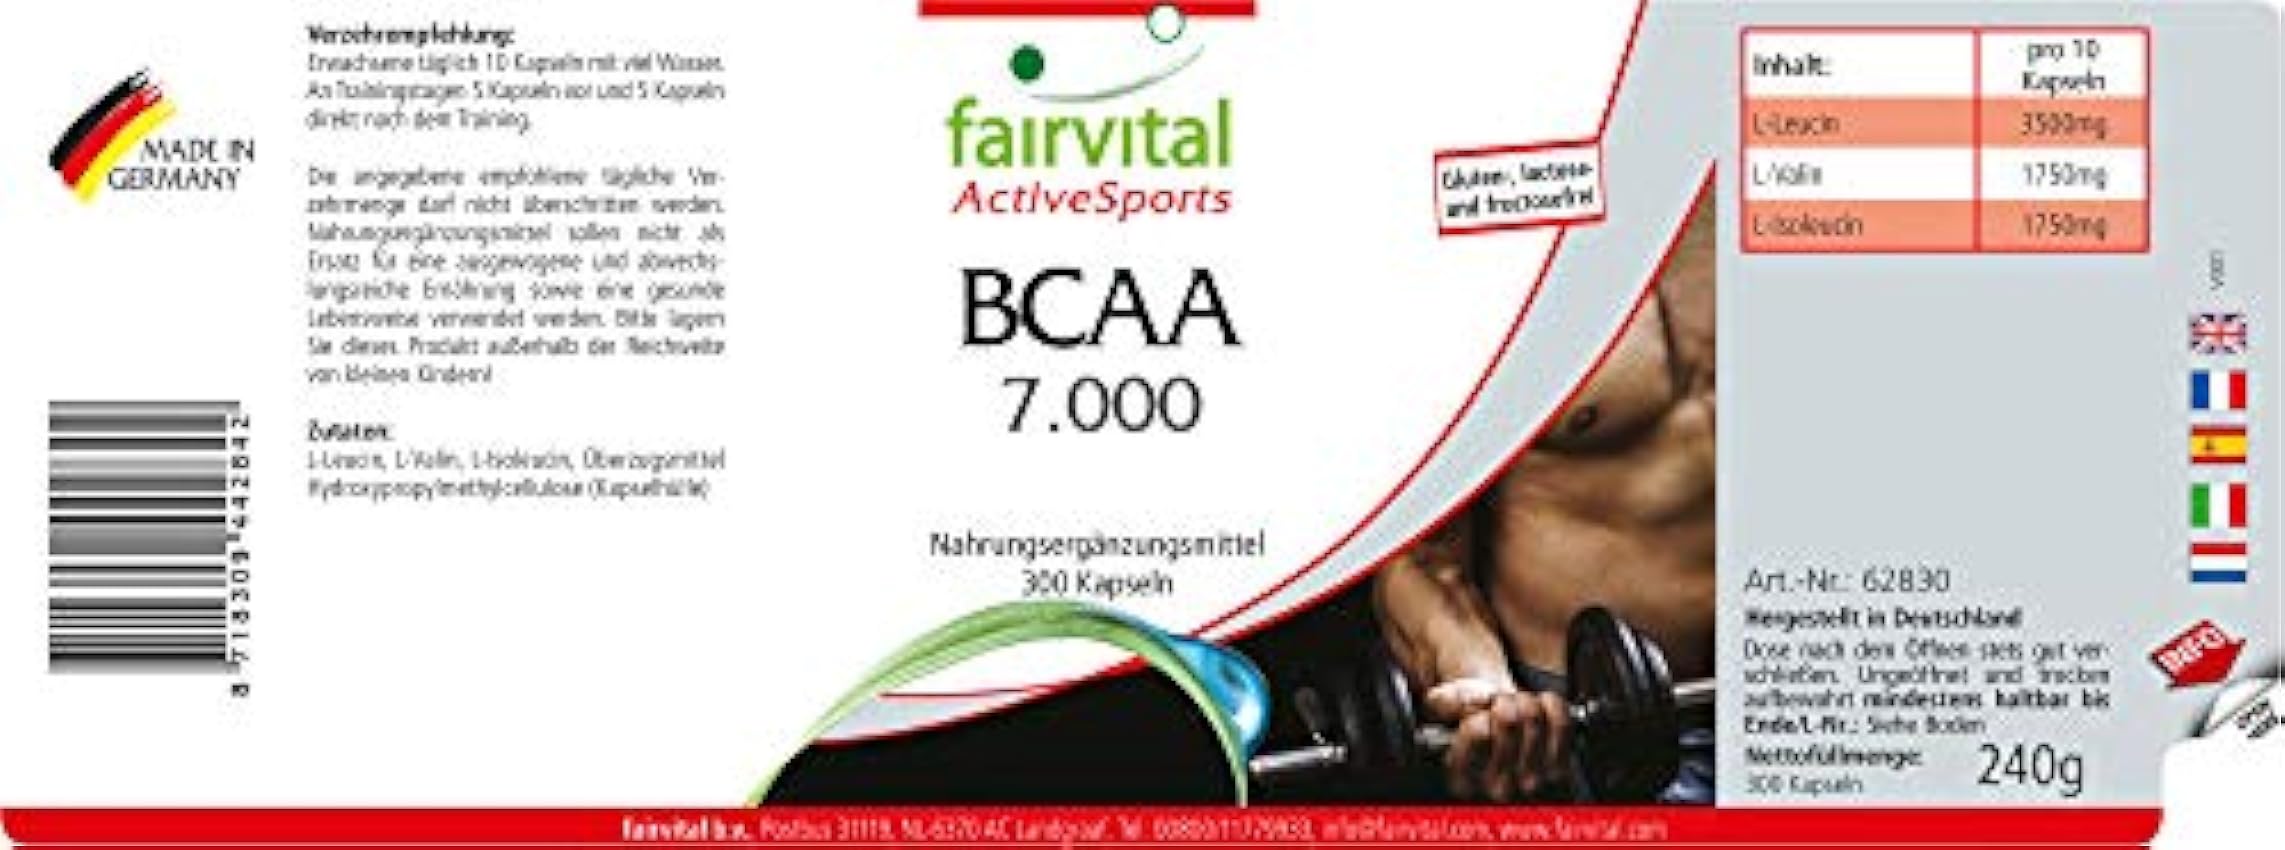 Fairvital | BCAA 7000 - Aminoácidos ramificados - Suplemento VEGANO y sin aditivos - 300 Cápsulas - Valina + Leucina + Isoleucina - Calidad Alemana jh8OplVB